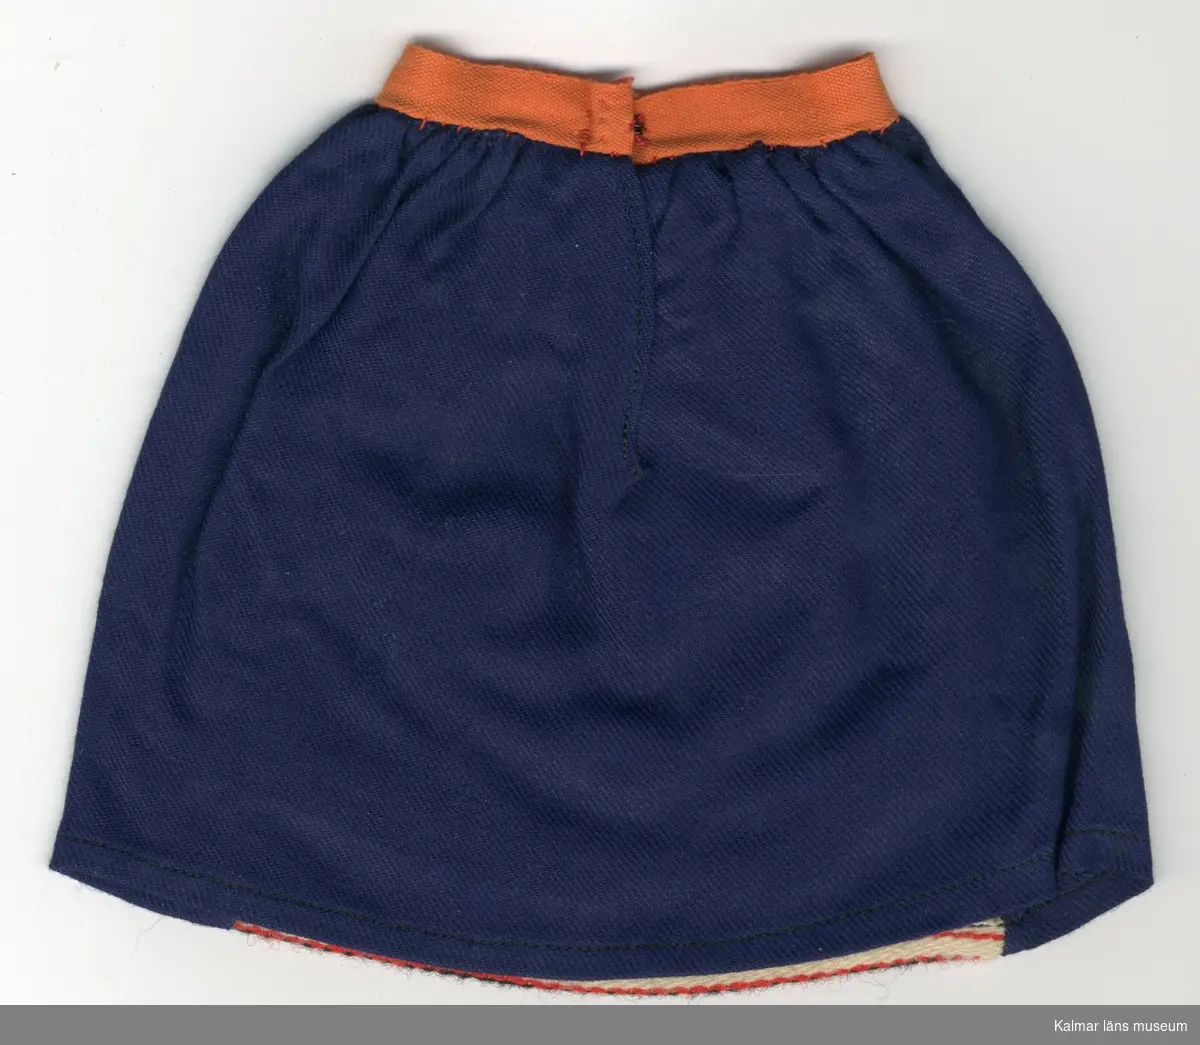 KLM 28082:266:1-4 Dockkjol, del av dräkt, av textil, ylle och bomull. Kjol, blå med infällt förkläde, av ylle, lodräta ränder i svart, rött, grönt, vitt och orange färg, Kjol och förkläde rynkade. :2 och :4 kjolar har bomullsband i orange färg i linning, :1 och :3 kjolar har bomullsband i ljusrött i linning. Knäppning, alla plagg, med en  hyska, av röd tråd och en hake, av metall. :1 Kjol har etikett fäst vid fåll, med texten: 19- (i blyerts). Nationaldräktskjol från Rättvik.